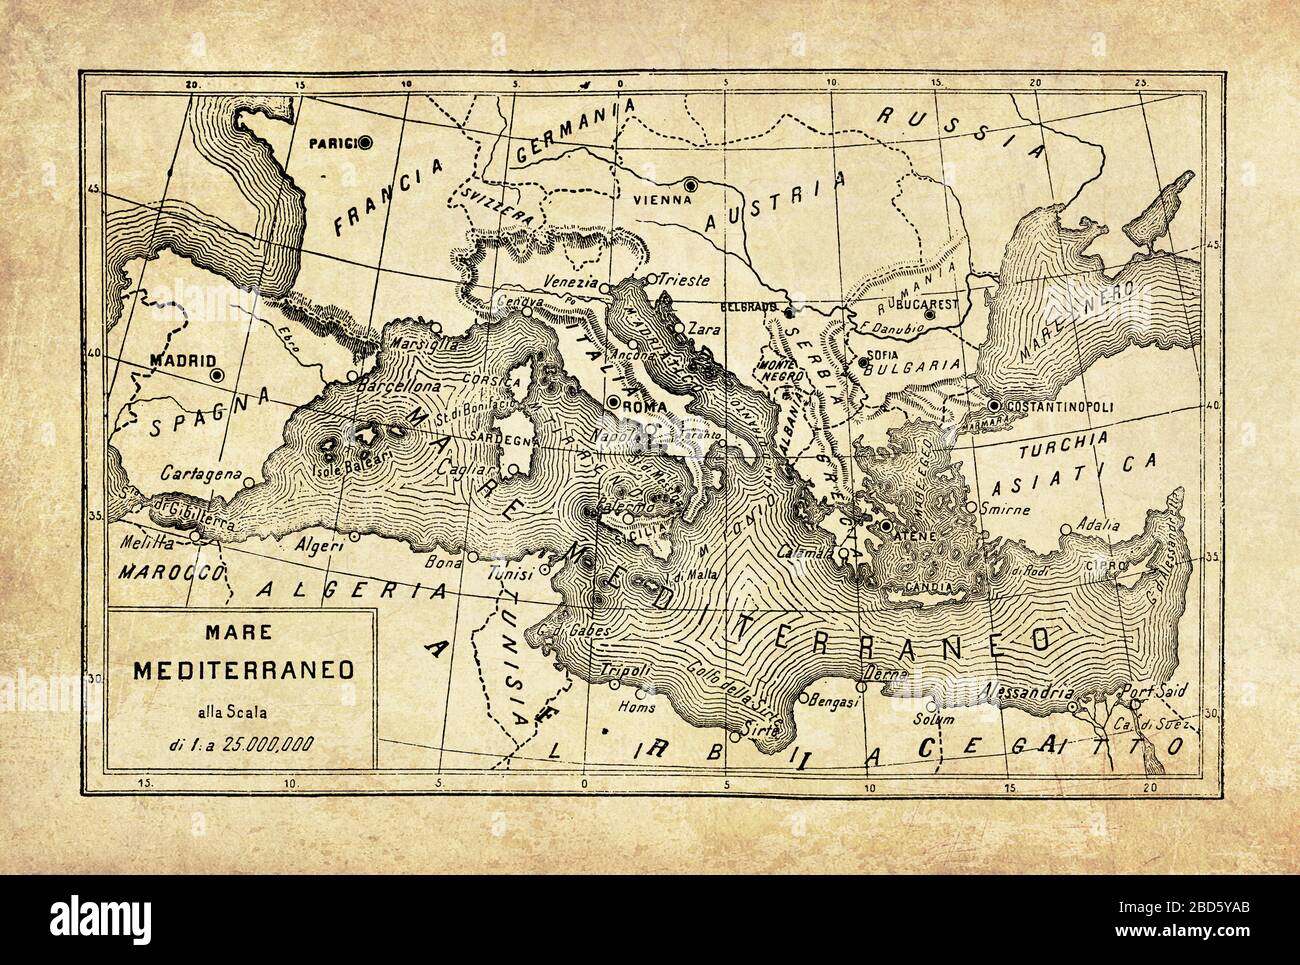 Alte Karte des Mittelmeeres, die fast vollständig von Südeuropa und Nordafrika umschlossen ist, die durch die Straße von Gibraltar mit dem Atlantischen Ozean verbunden ist, mit geografischen italienischen Namen und Beschreibungen Stockfoto